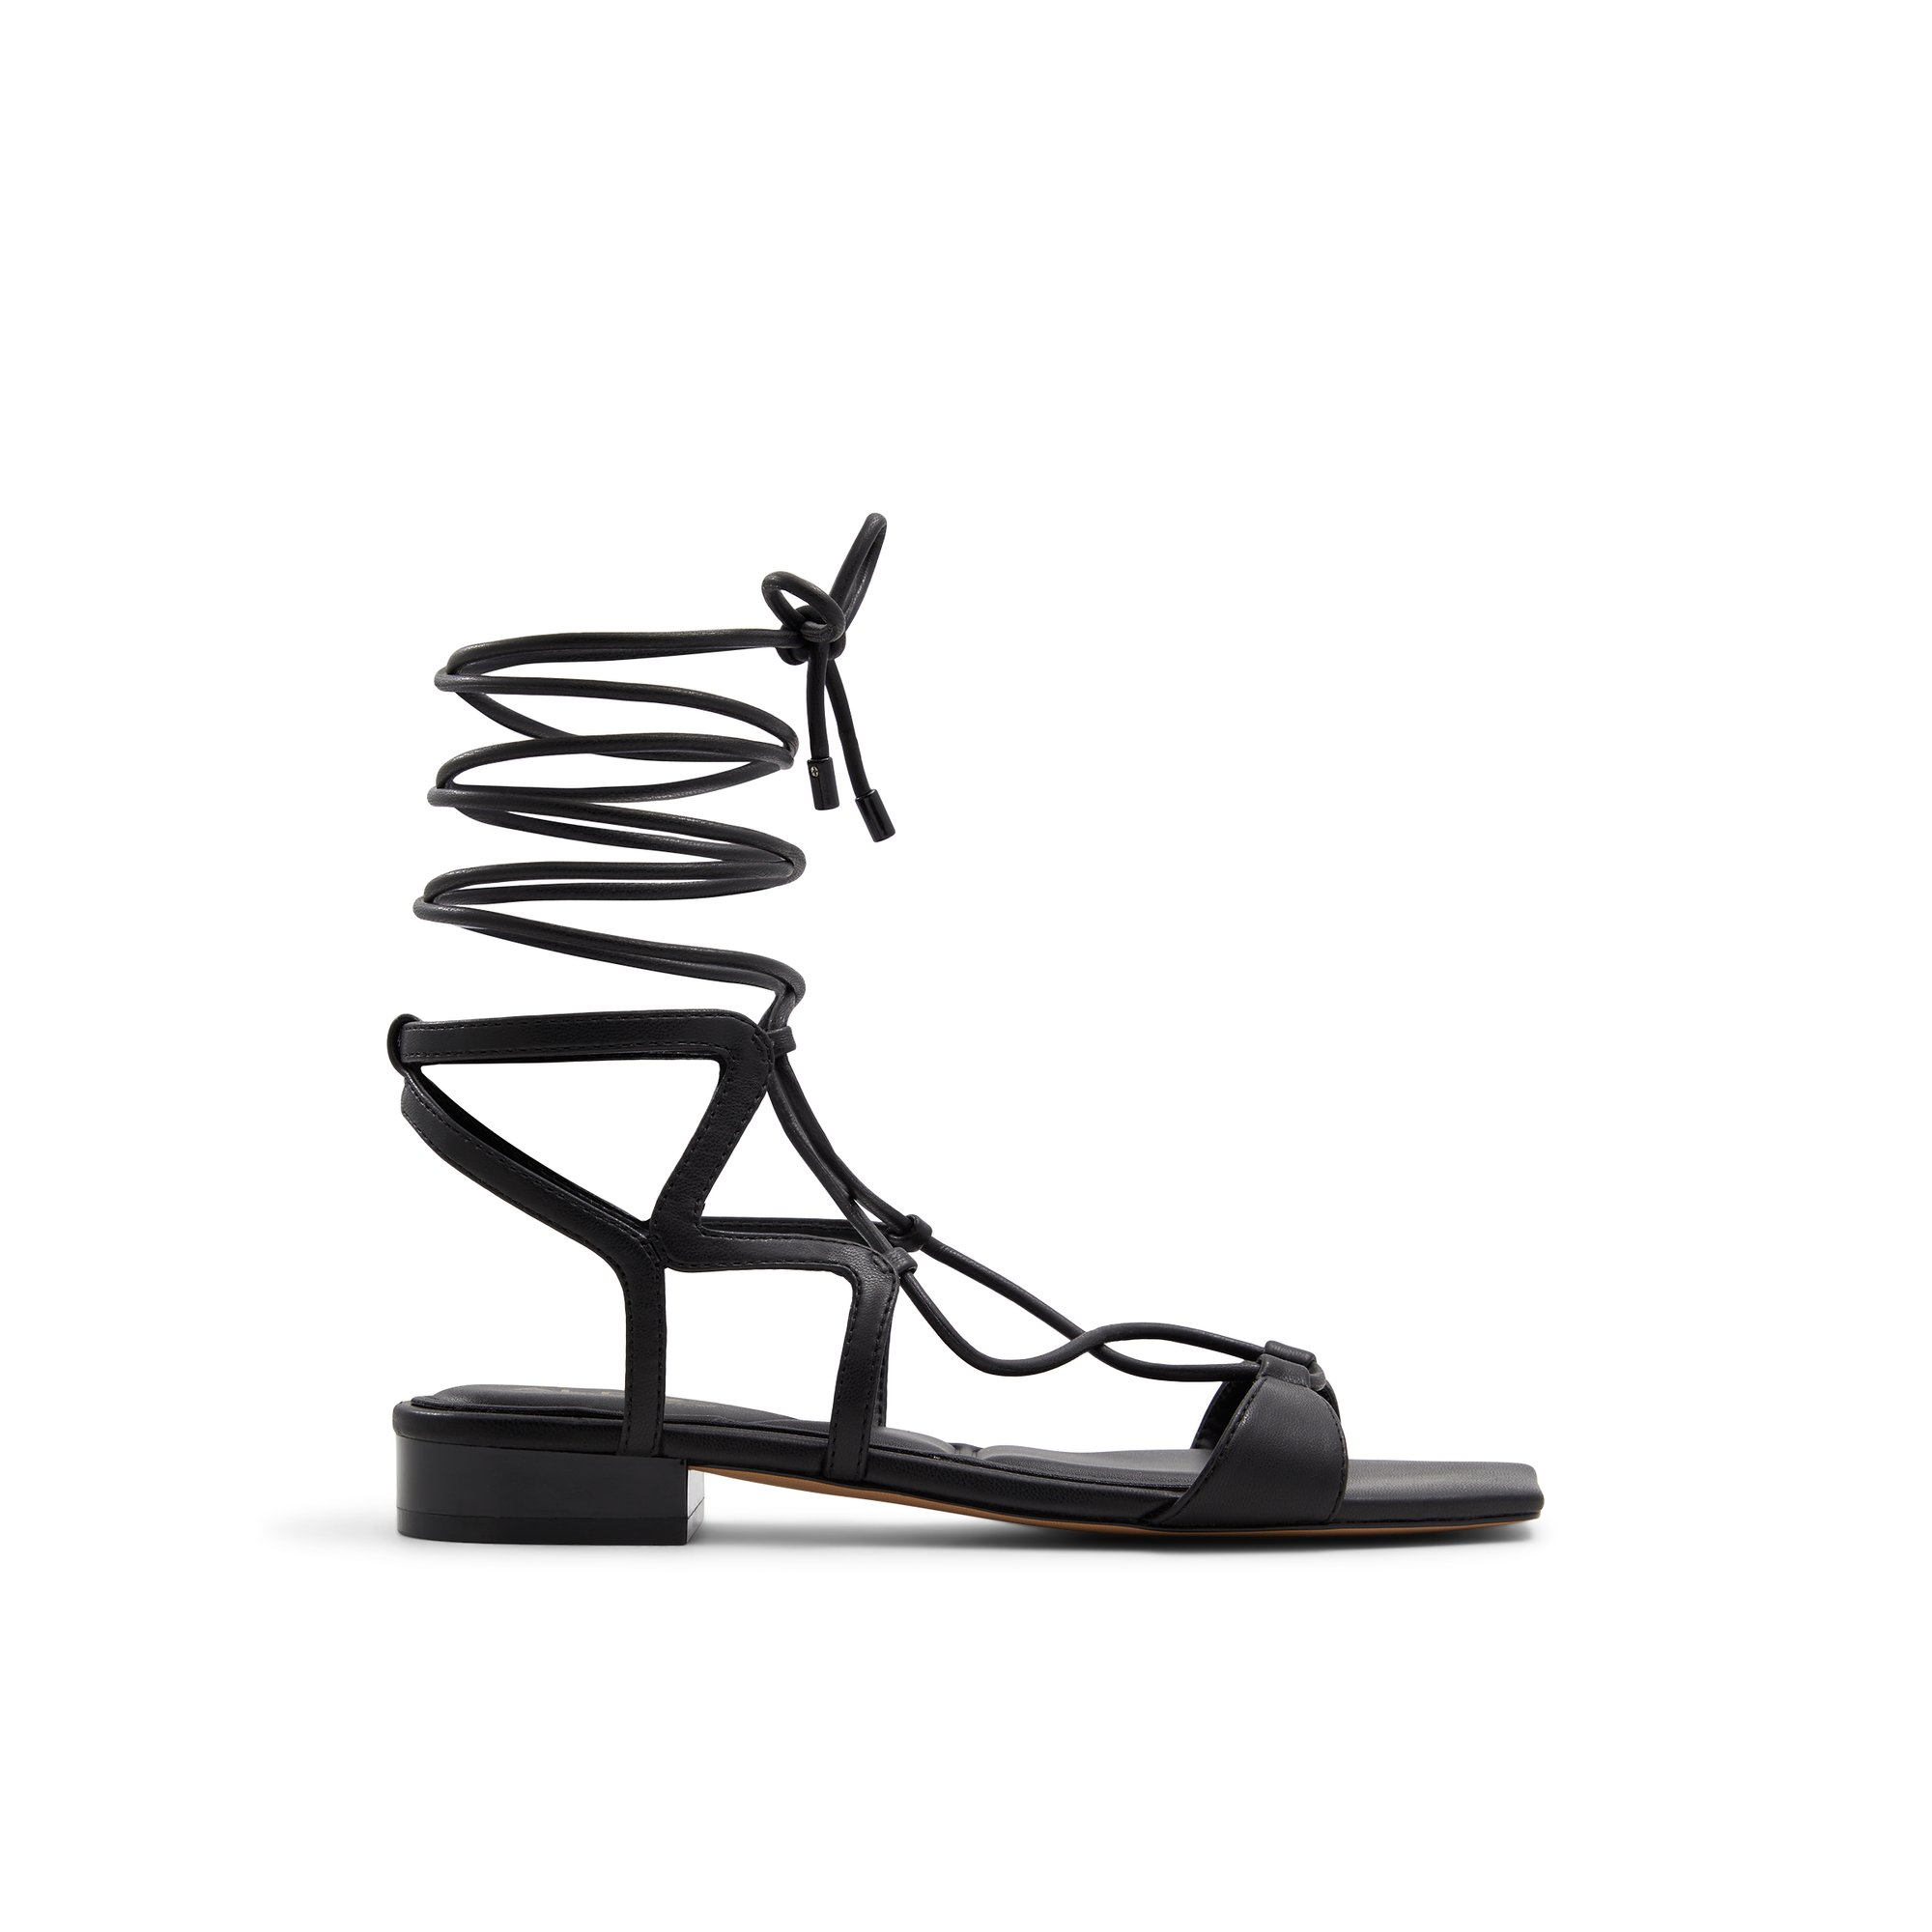 ALDO Breezy - Women's Flat Sandals - Black